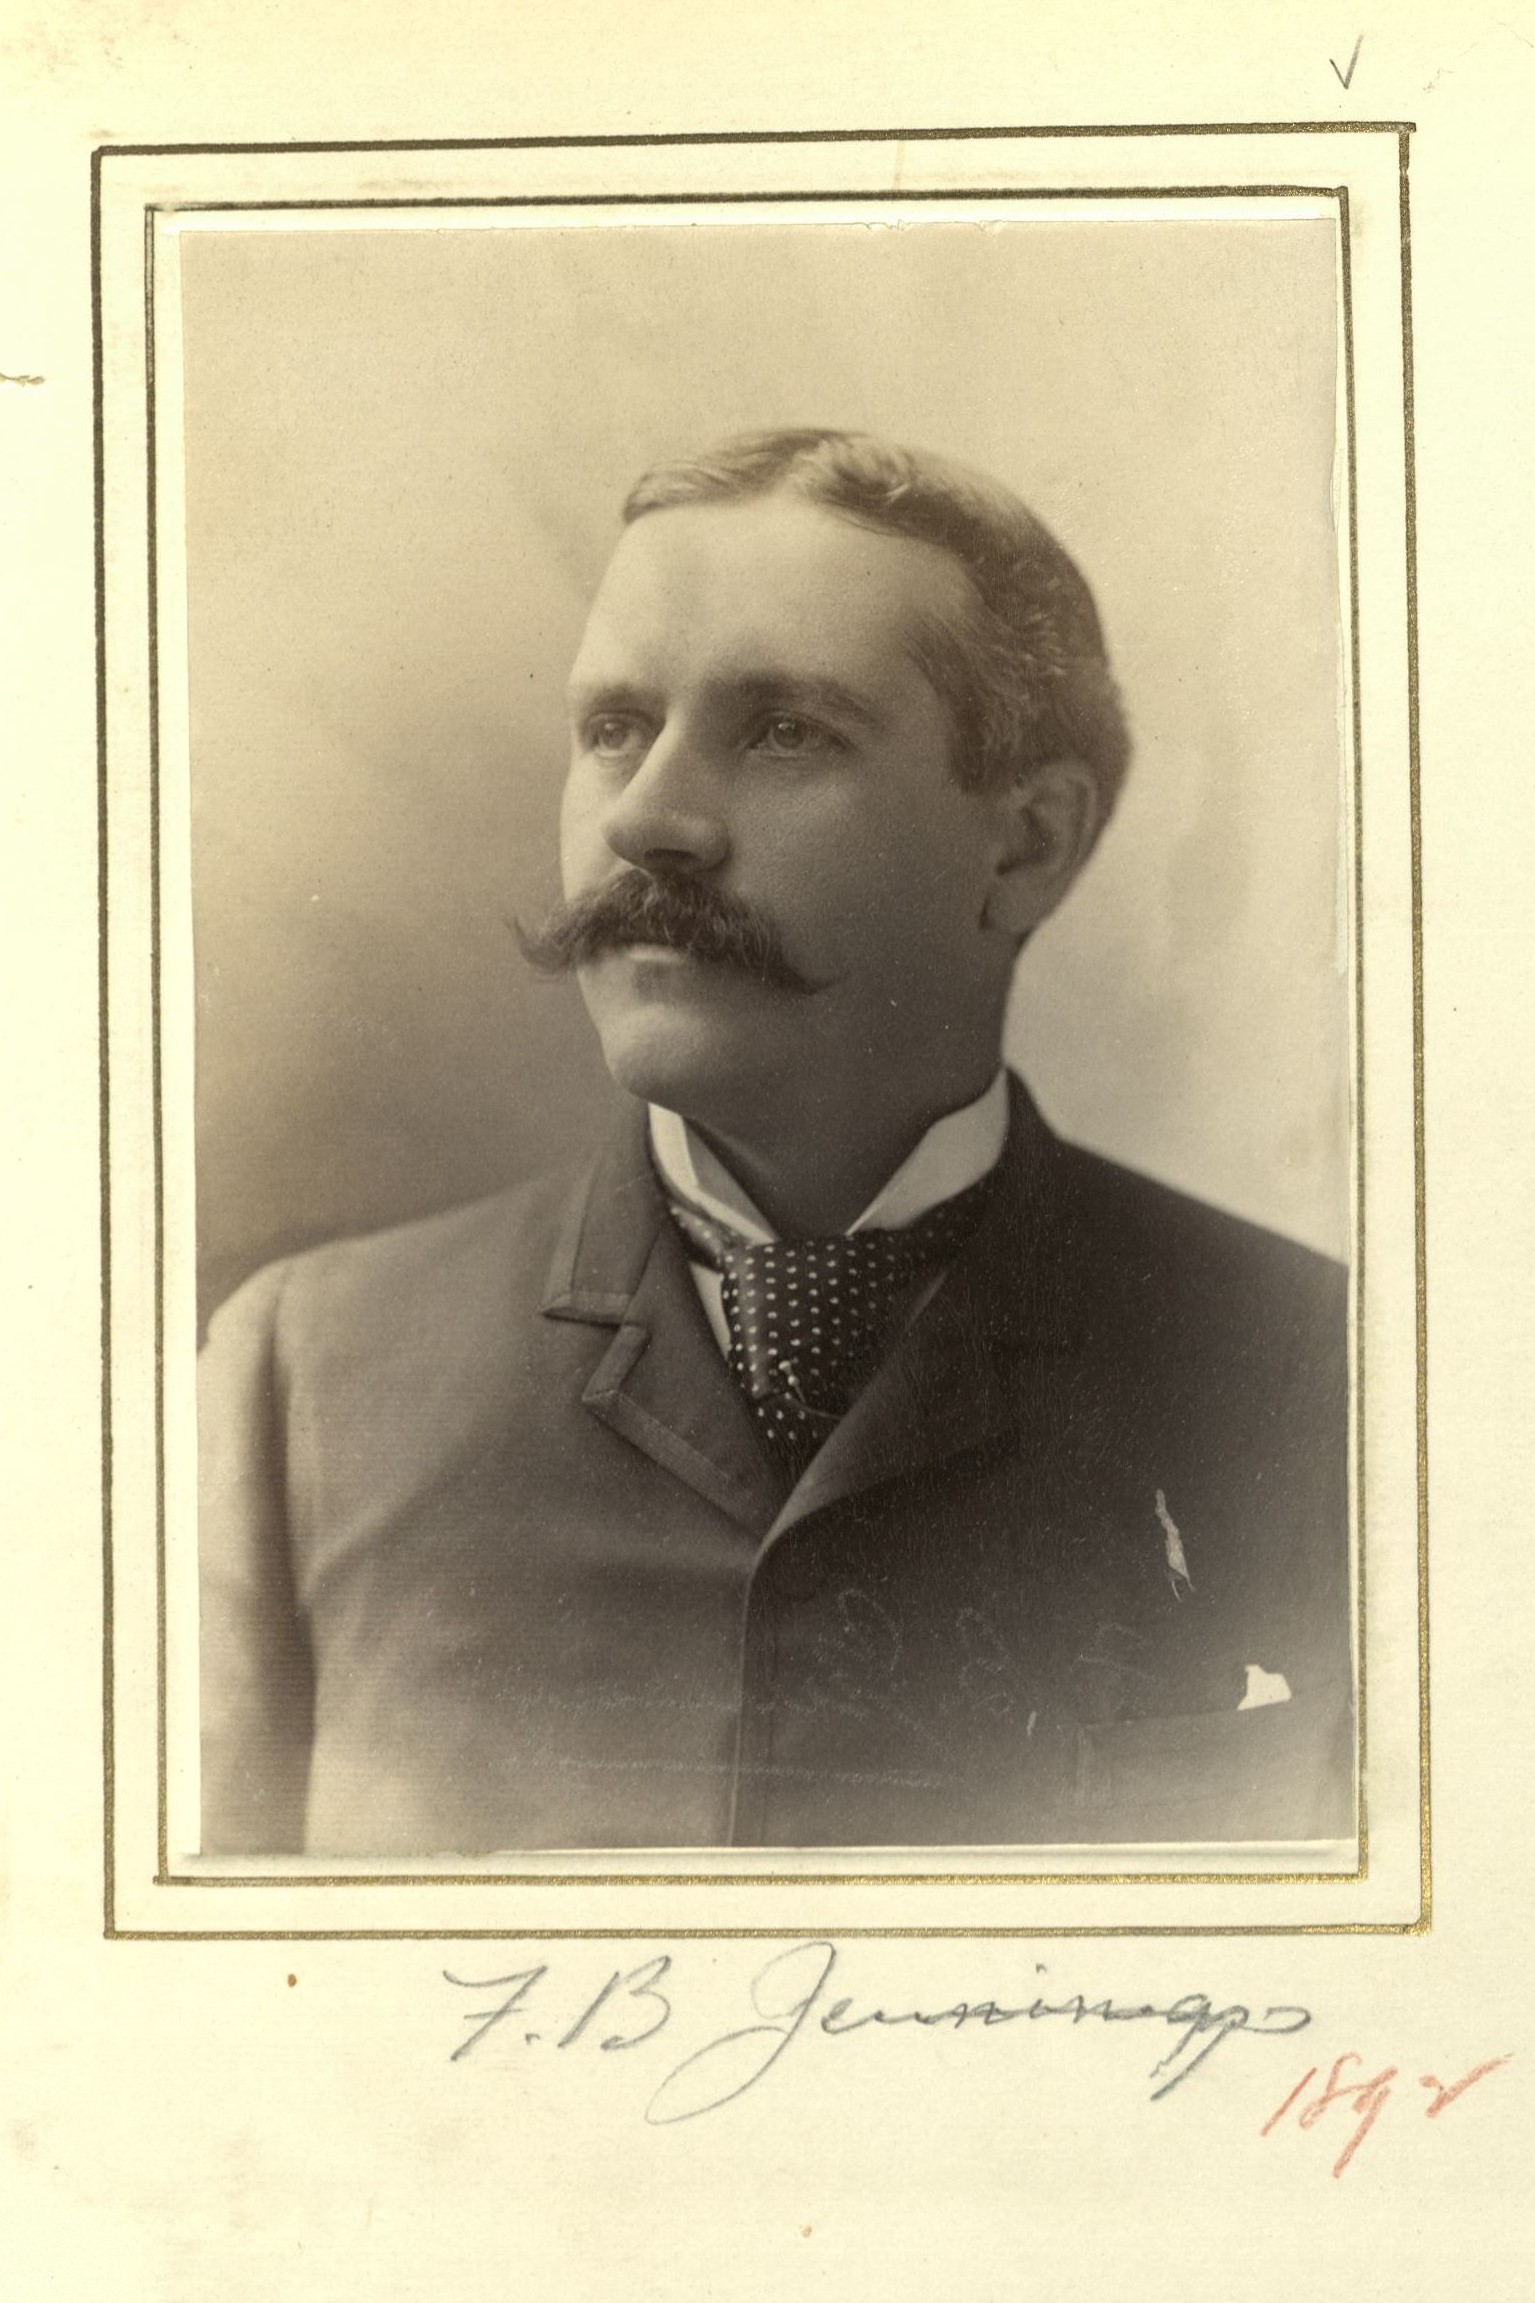 Member portrait of Frederic B. Jennings